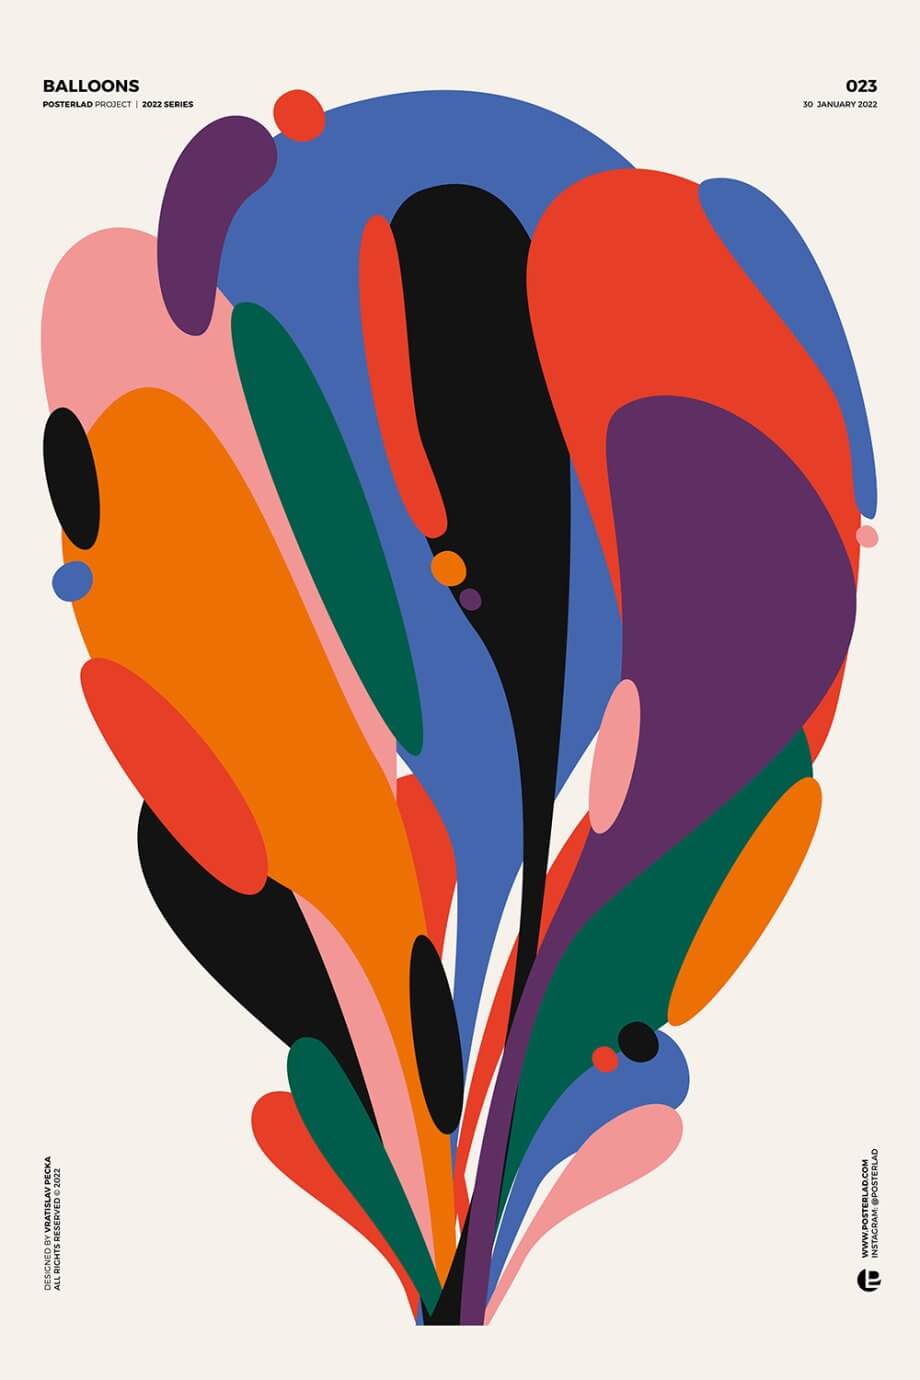 posterlad digital art - abstract balloons